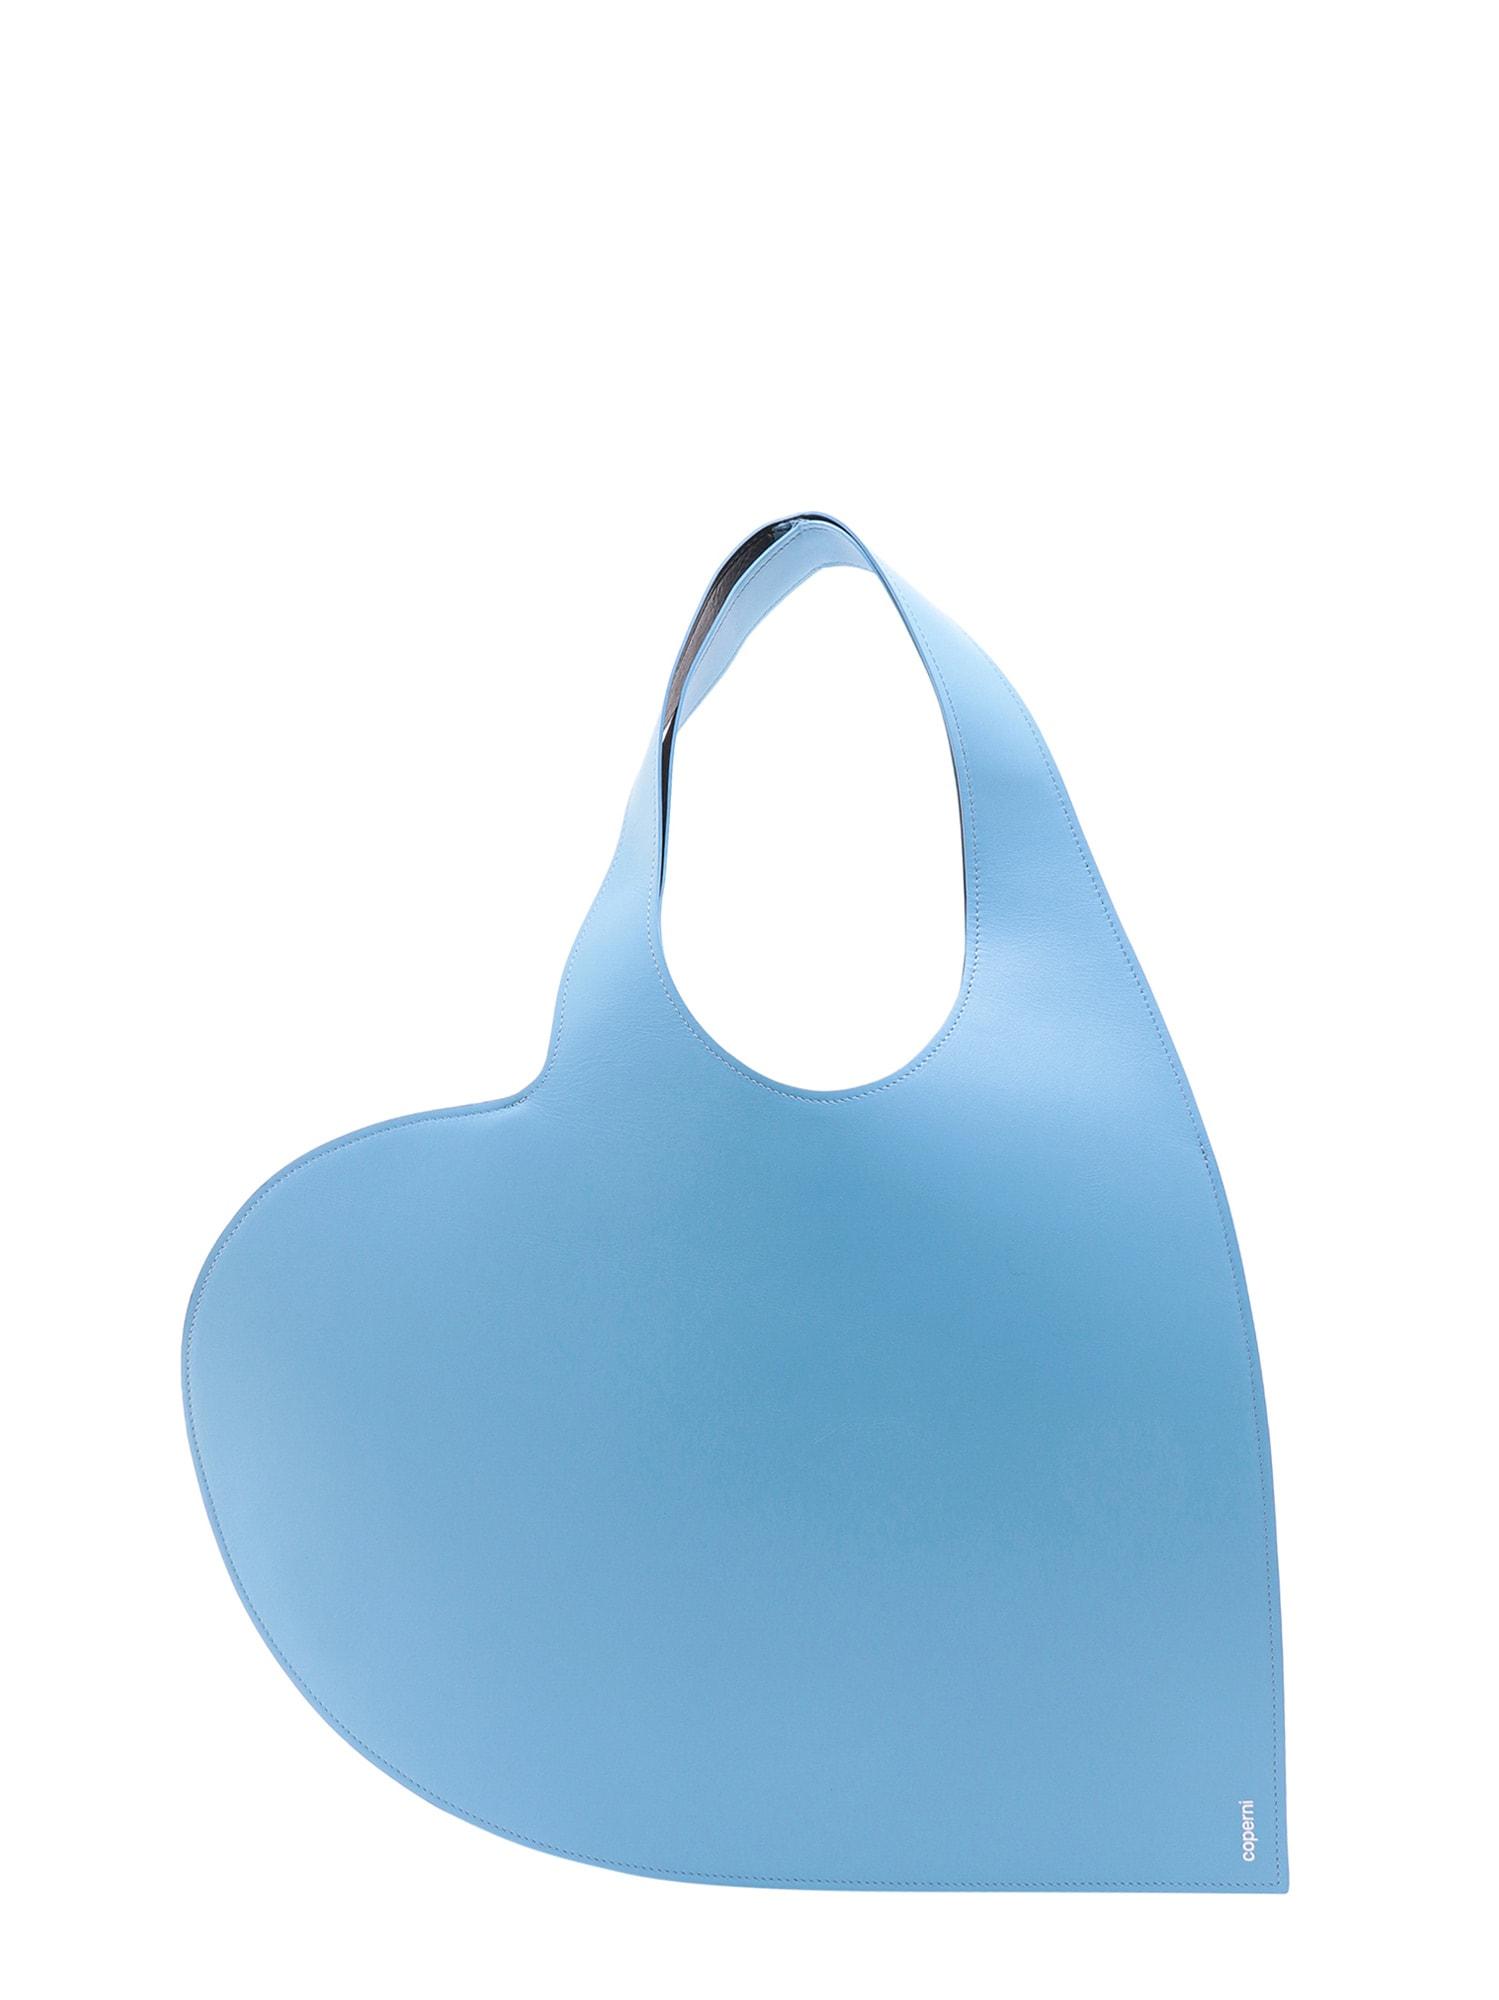 Coperni Shoulder Bag in Blue | Lyst